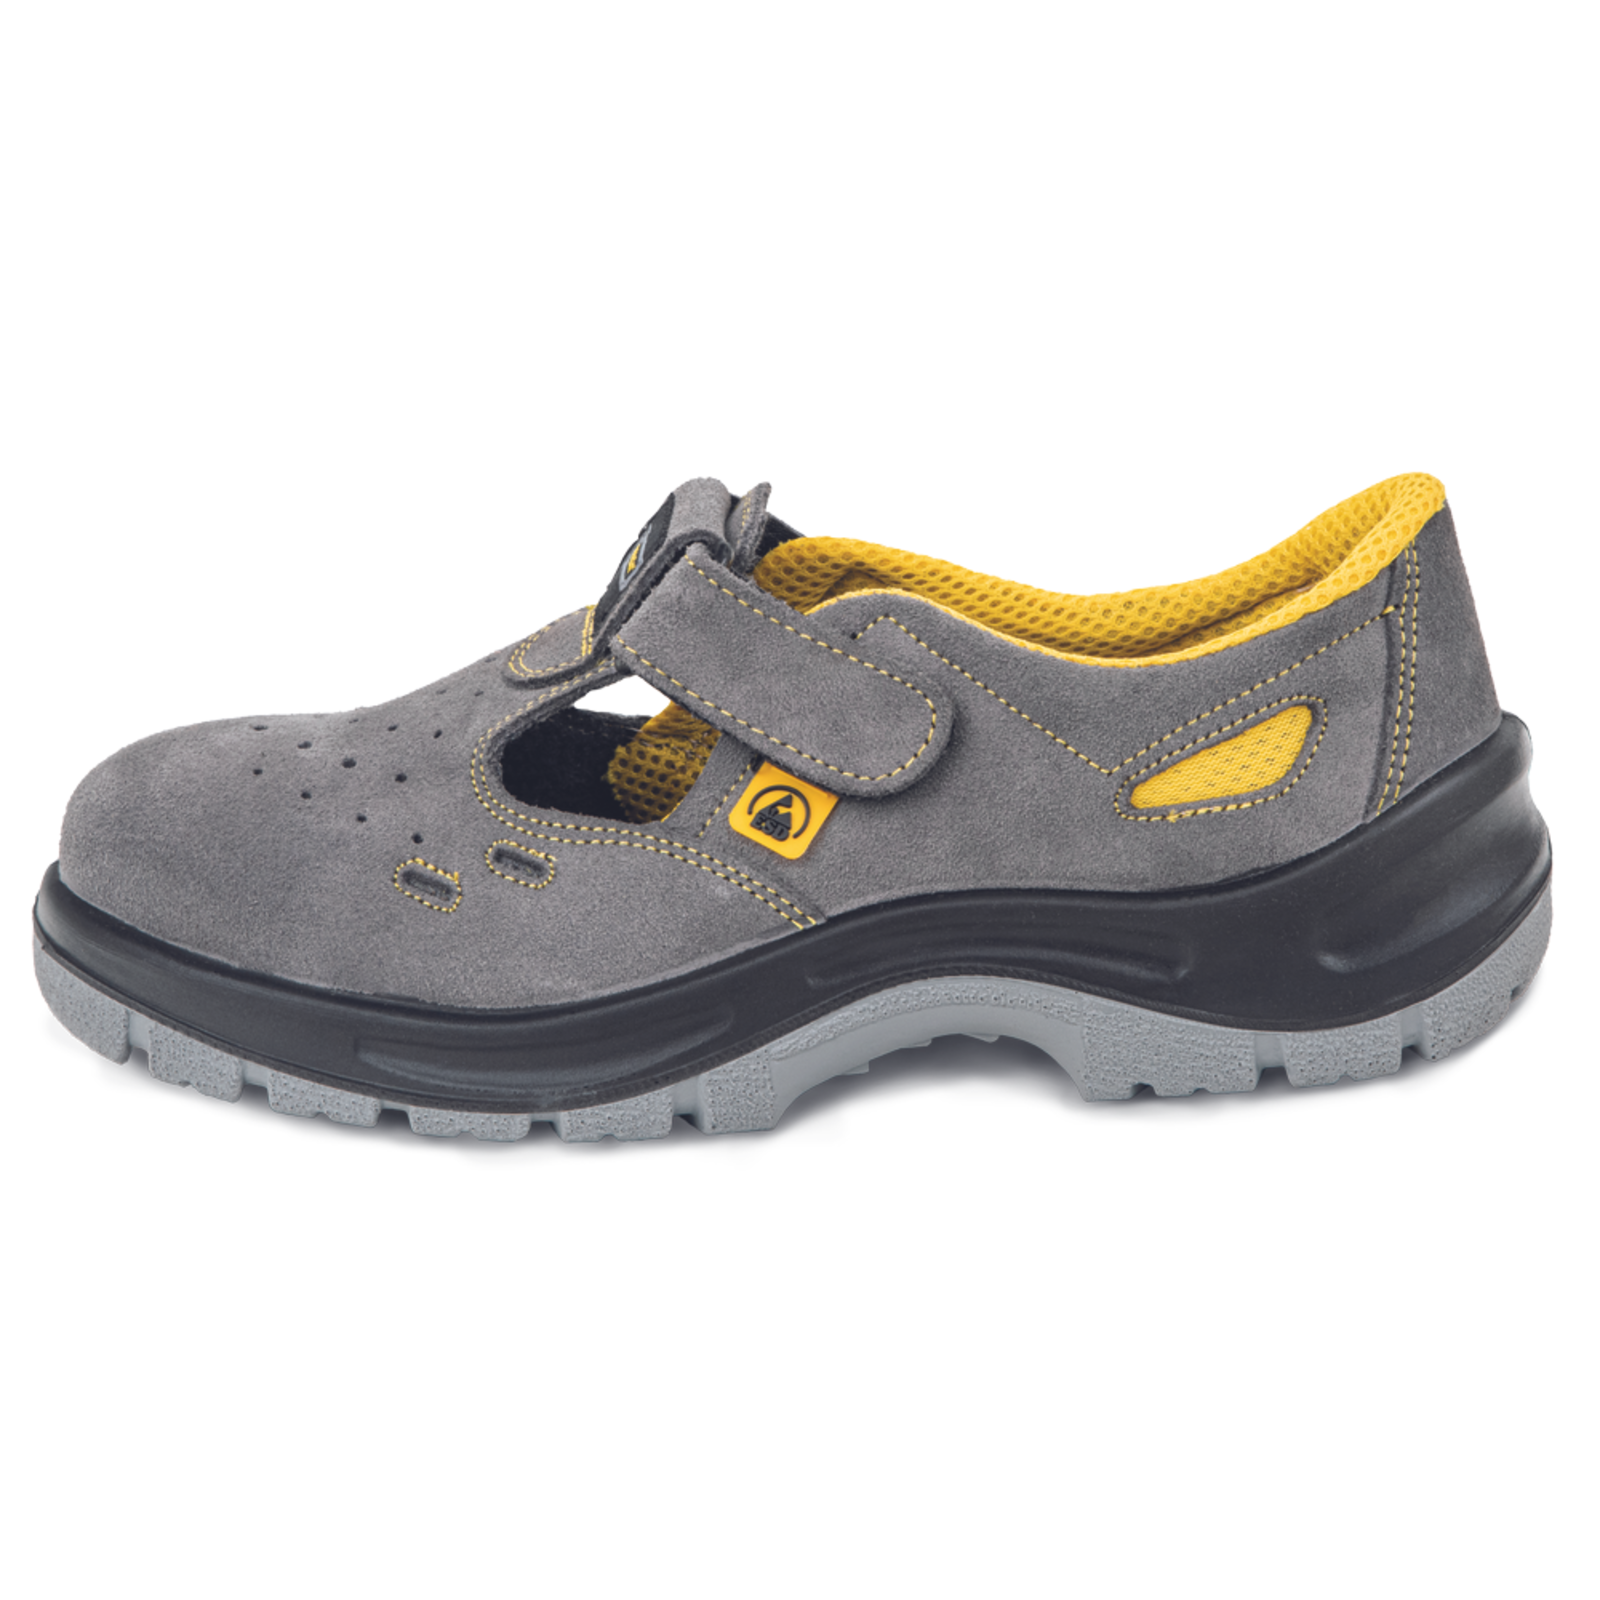 Pracovné bezpečnostné sandále Panda Selma MF ESD S1P SRC - veľkosť: 45, farba: sivá/žltá